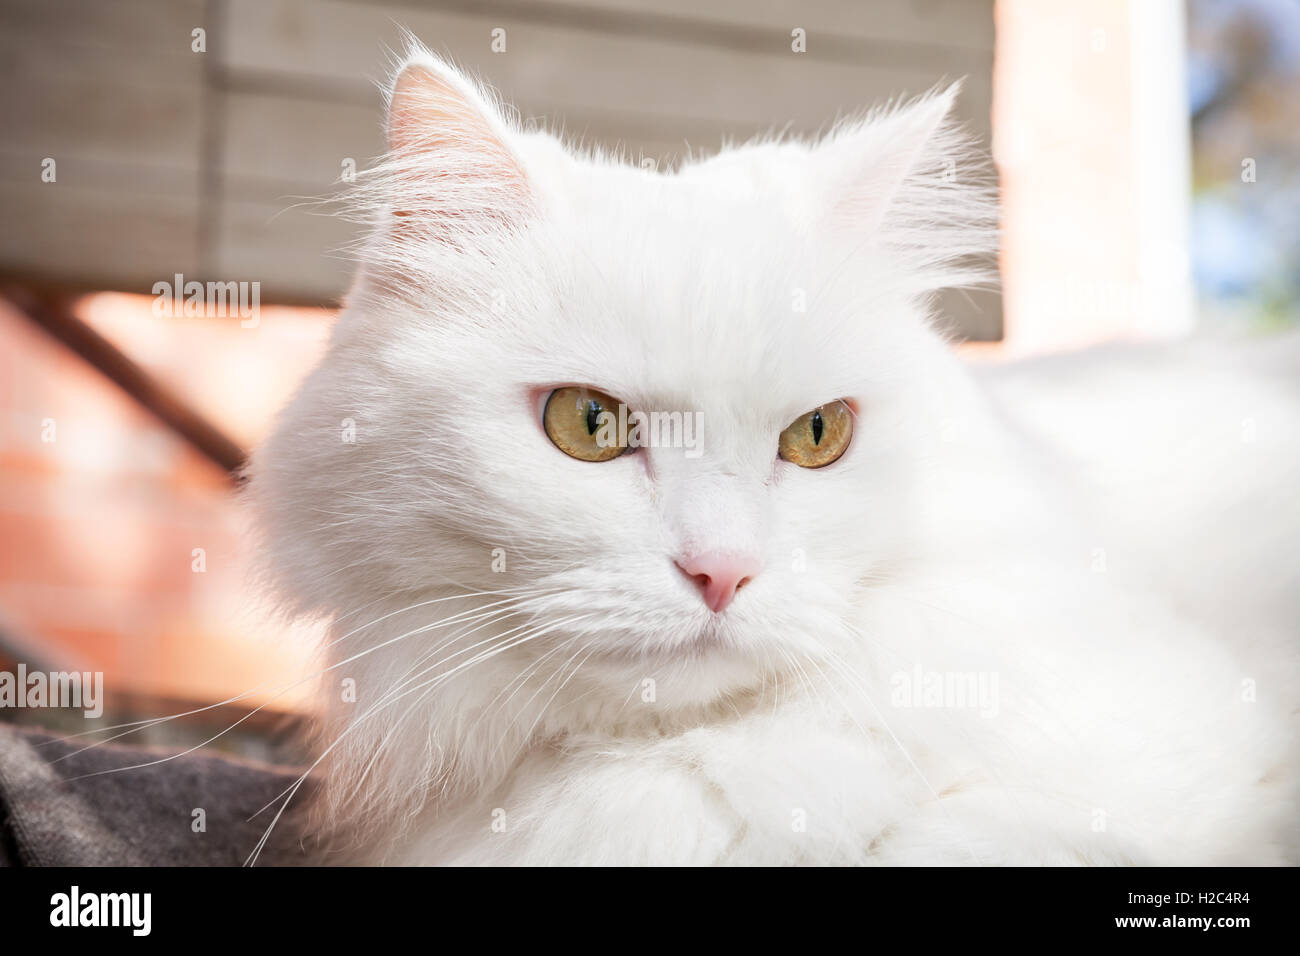 Close up portrait of white fluffy cat avec des yeux jaunes Banque D'Images